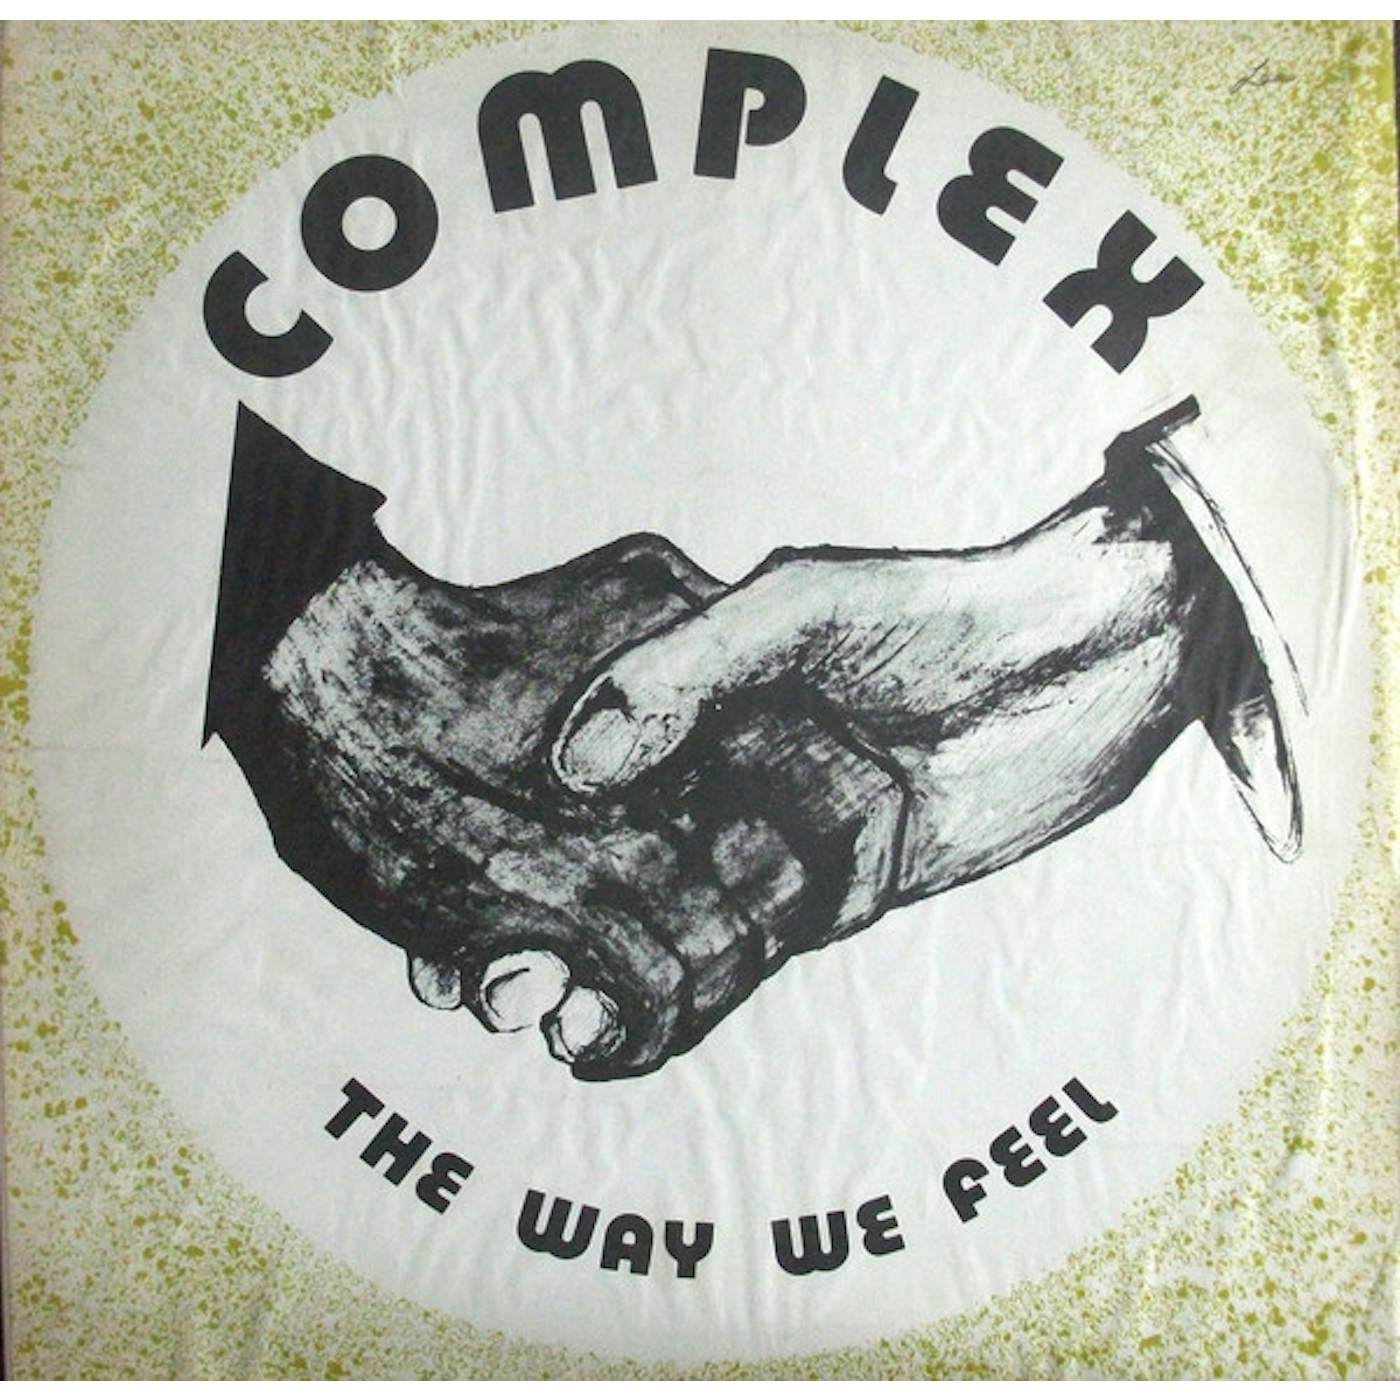 Complex WAY WE FEEL Vinyl Record